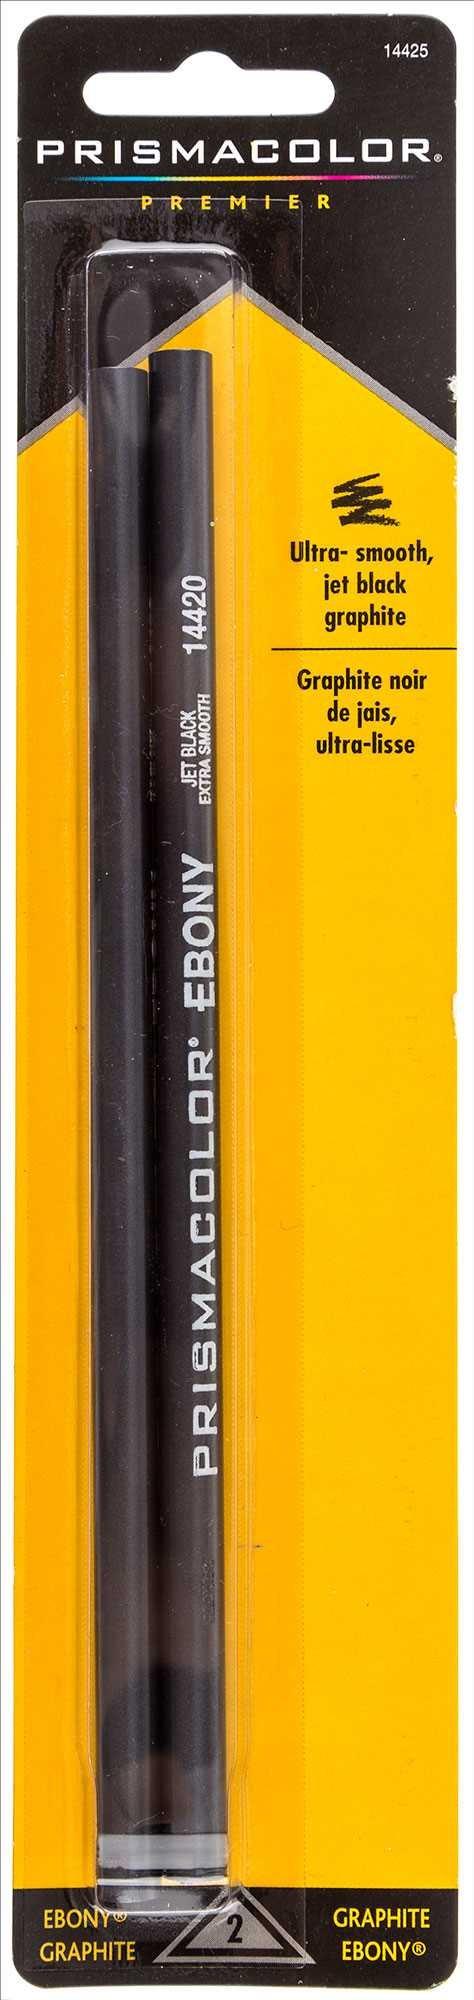 Prismacolor Ebony Graphite Pencil